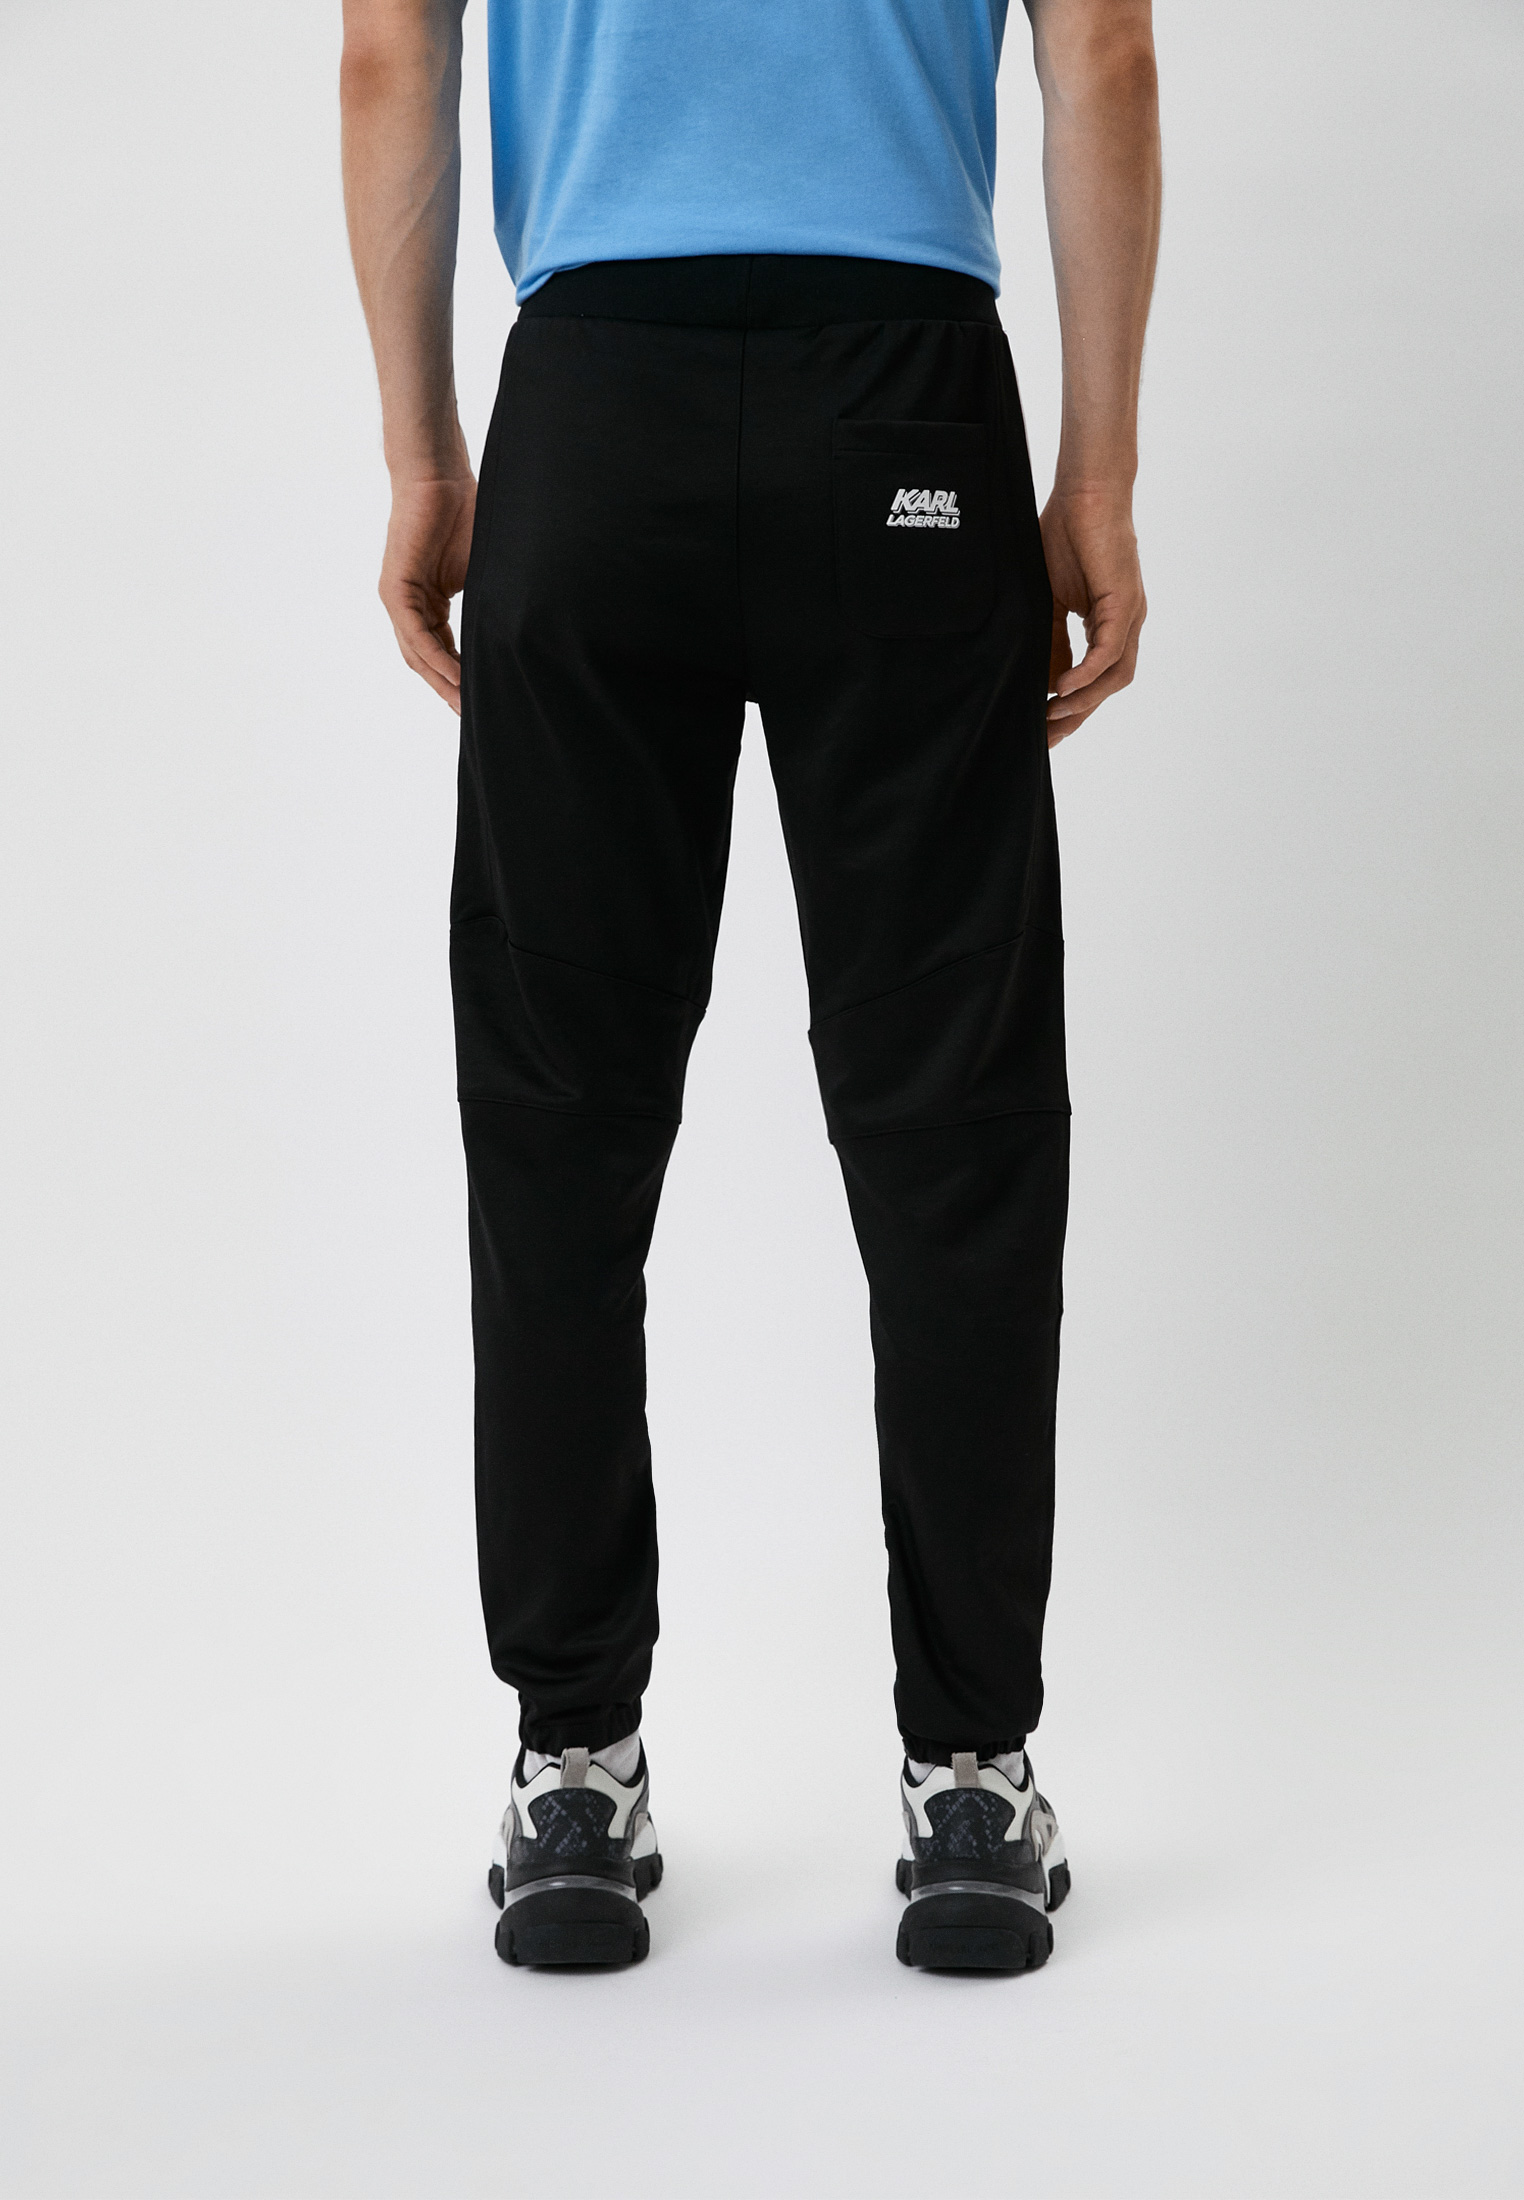 Мужские спортивные брюки Karl Lagerfeld (Карл Лагерфельд) 705083-523905: изображение 7